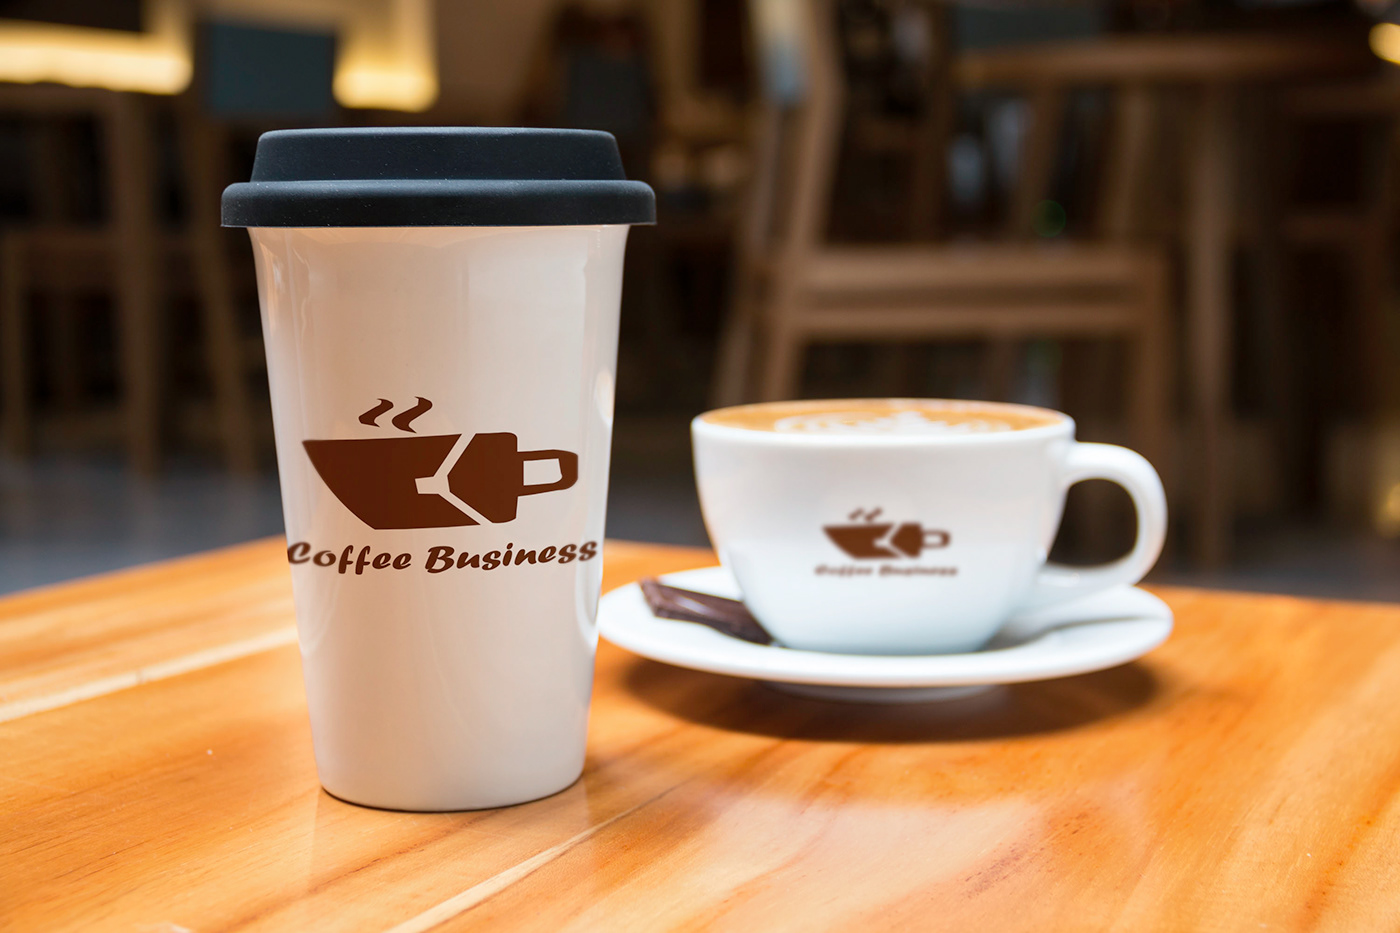 bag brown bag business business bag Coffee Coffee Business coffee cup coffee mug dark coffee tea